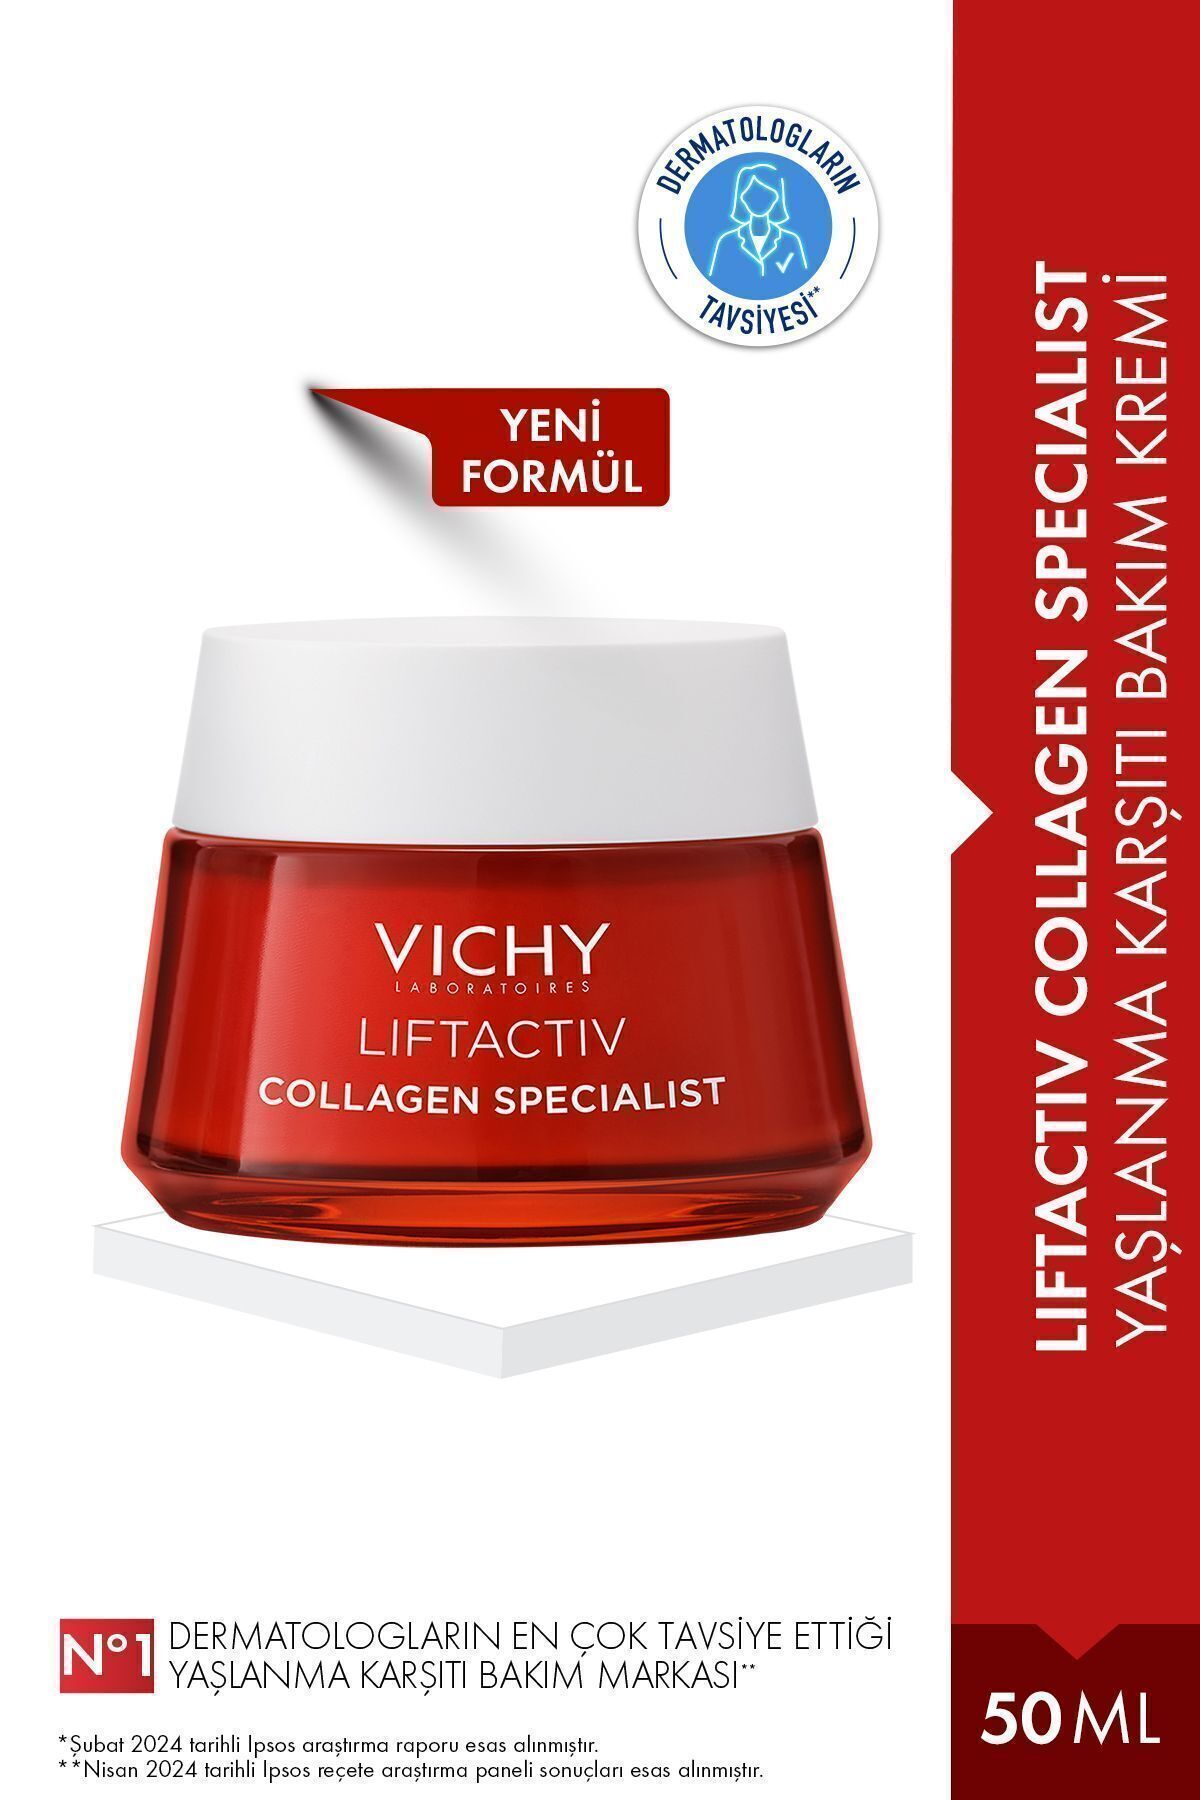 Vichy Liftactiv Collagen Specialist Yaşlanma ve Kırışıklık Karşıtı Kolajen Krem 50 ML